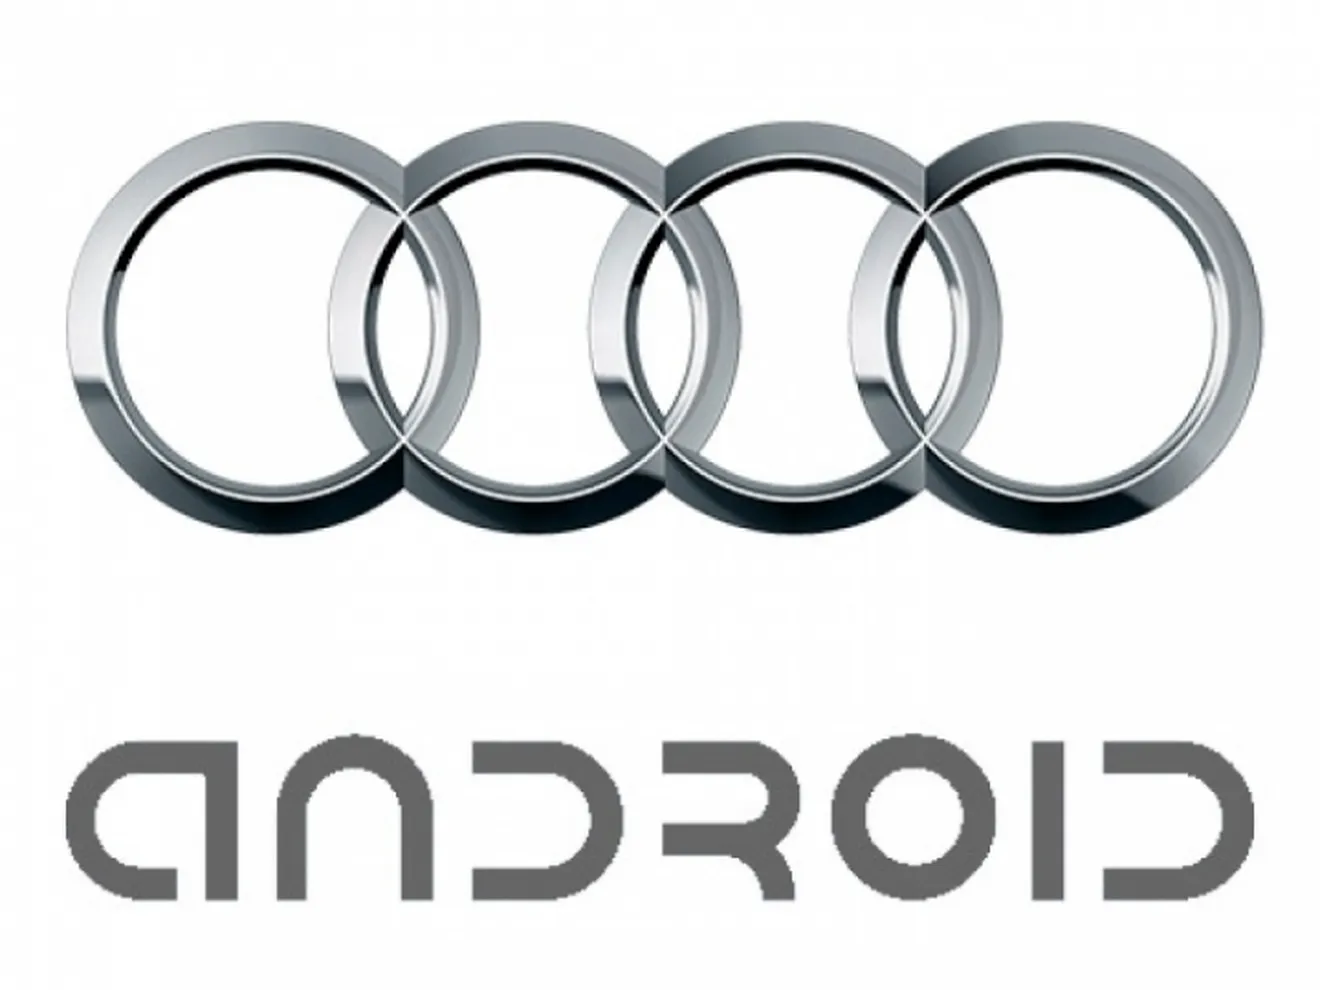 Audi integrará iOS y Android en sus coches